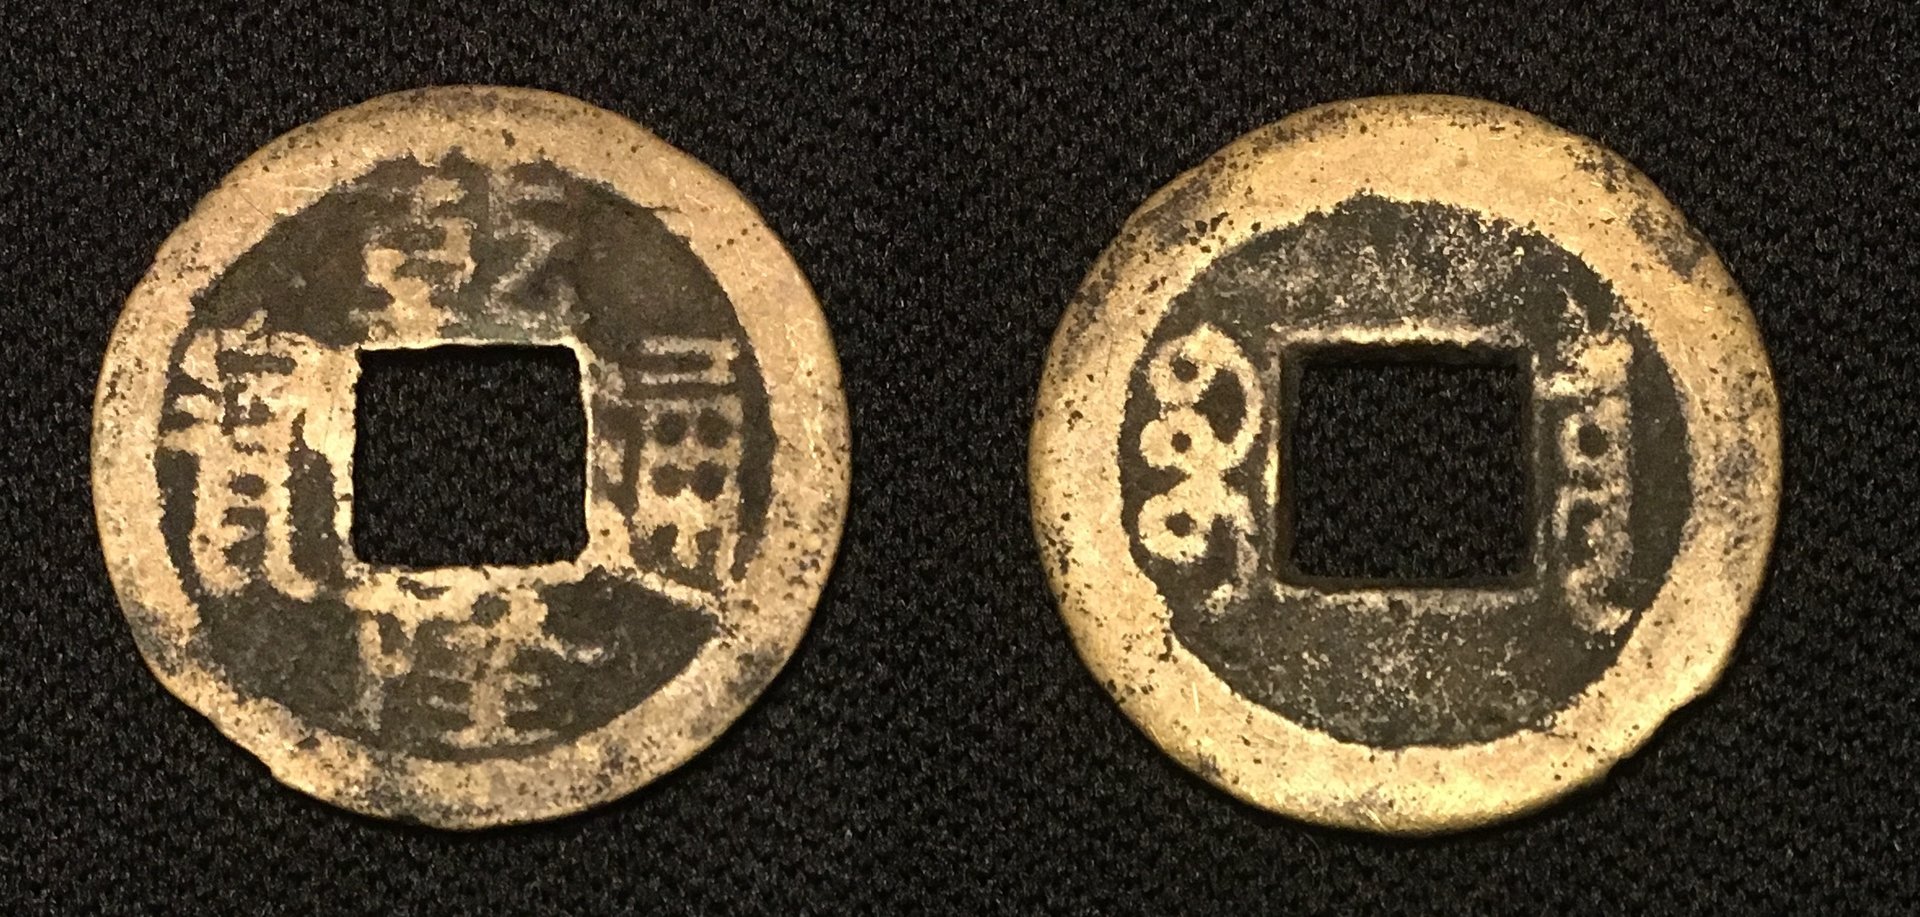 1736-1800s AD Cash Qian Long Tong Bao Boo Chiowan Contemoprary Counterfeit 1.21g 20mm Combined.jpg